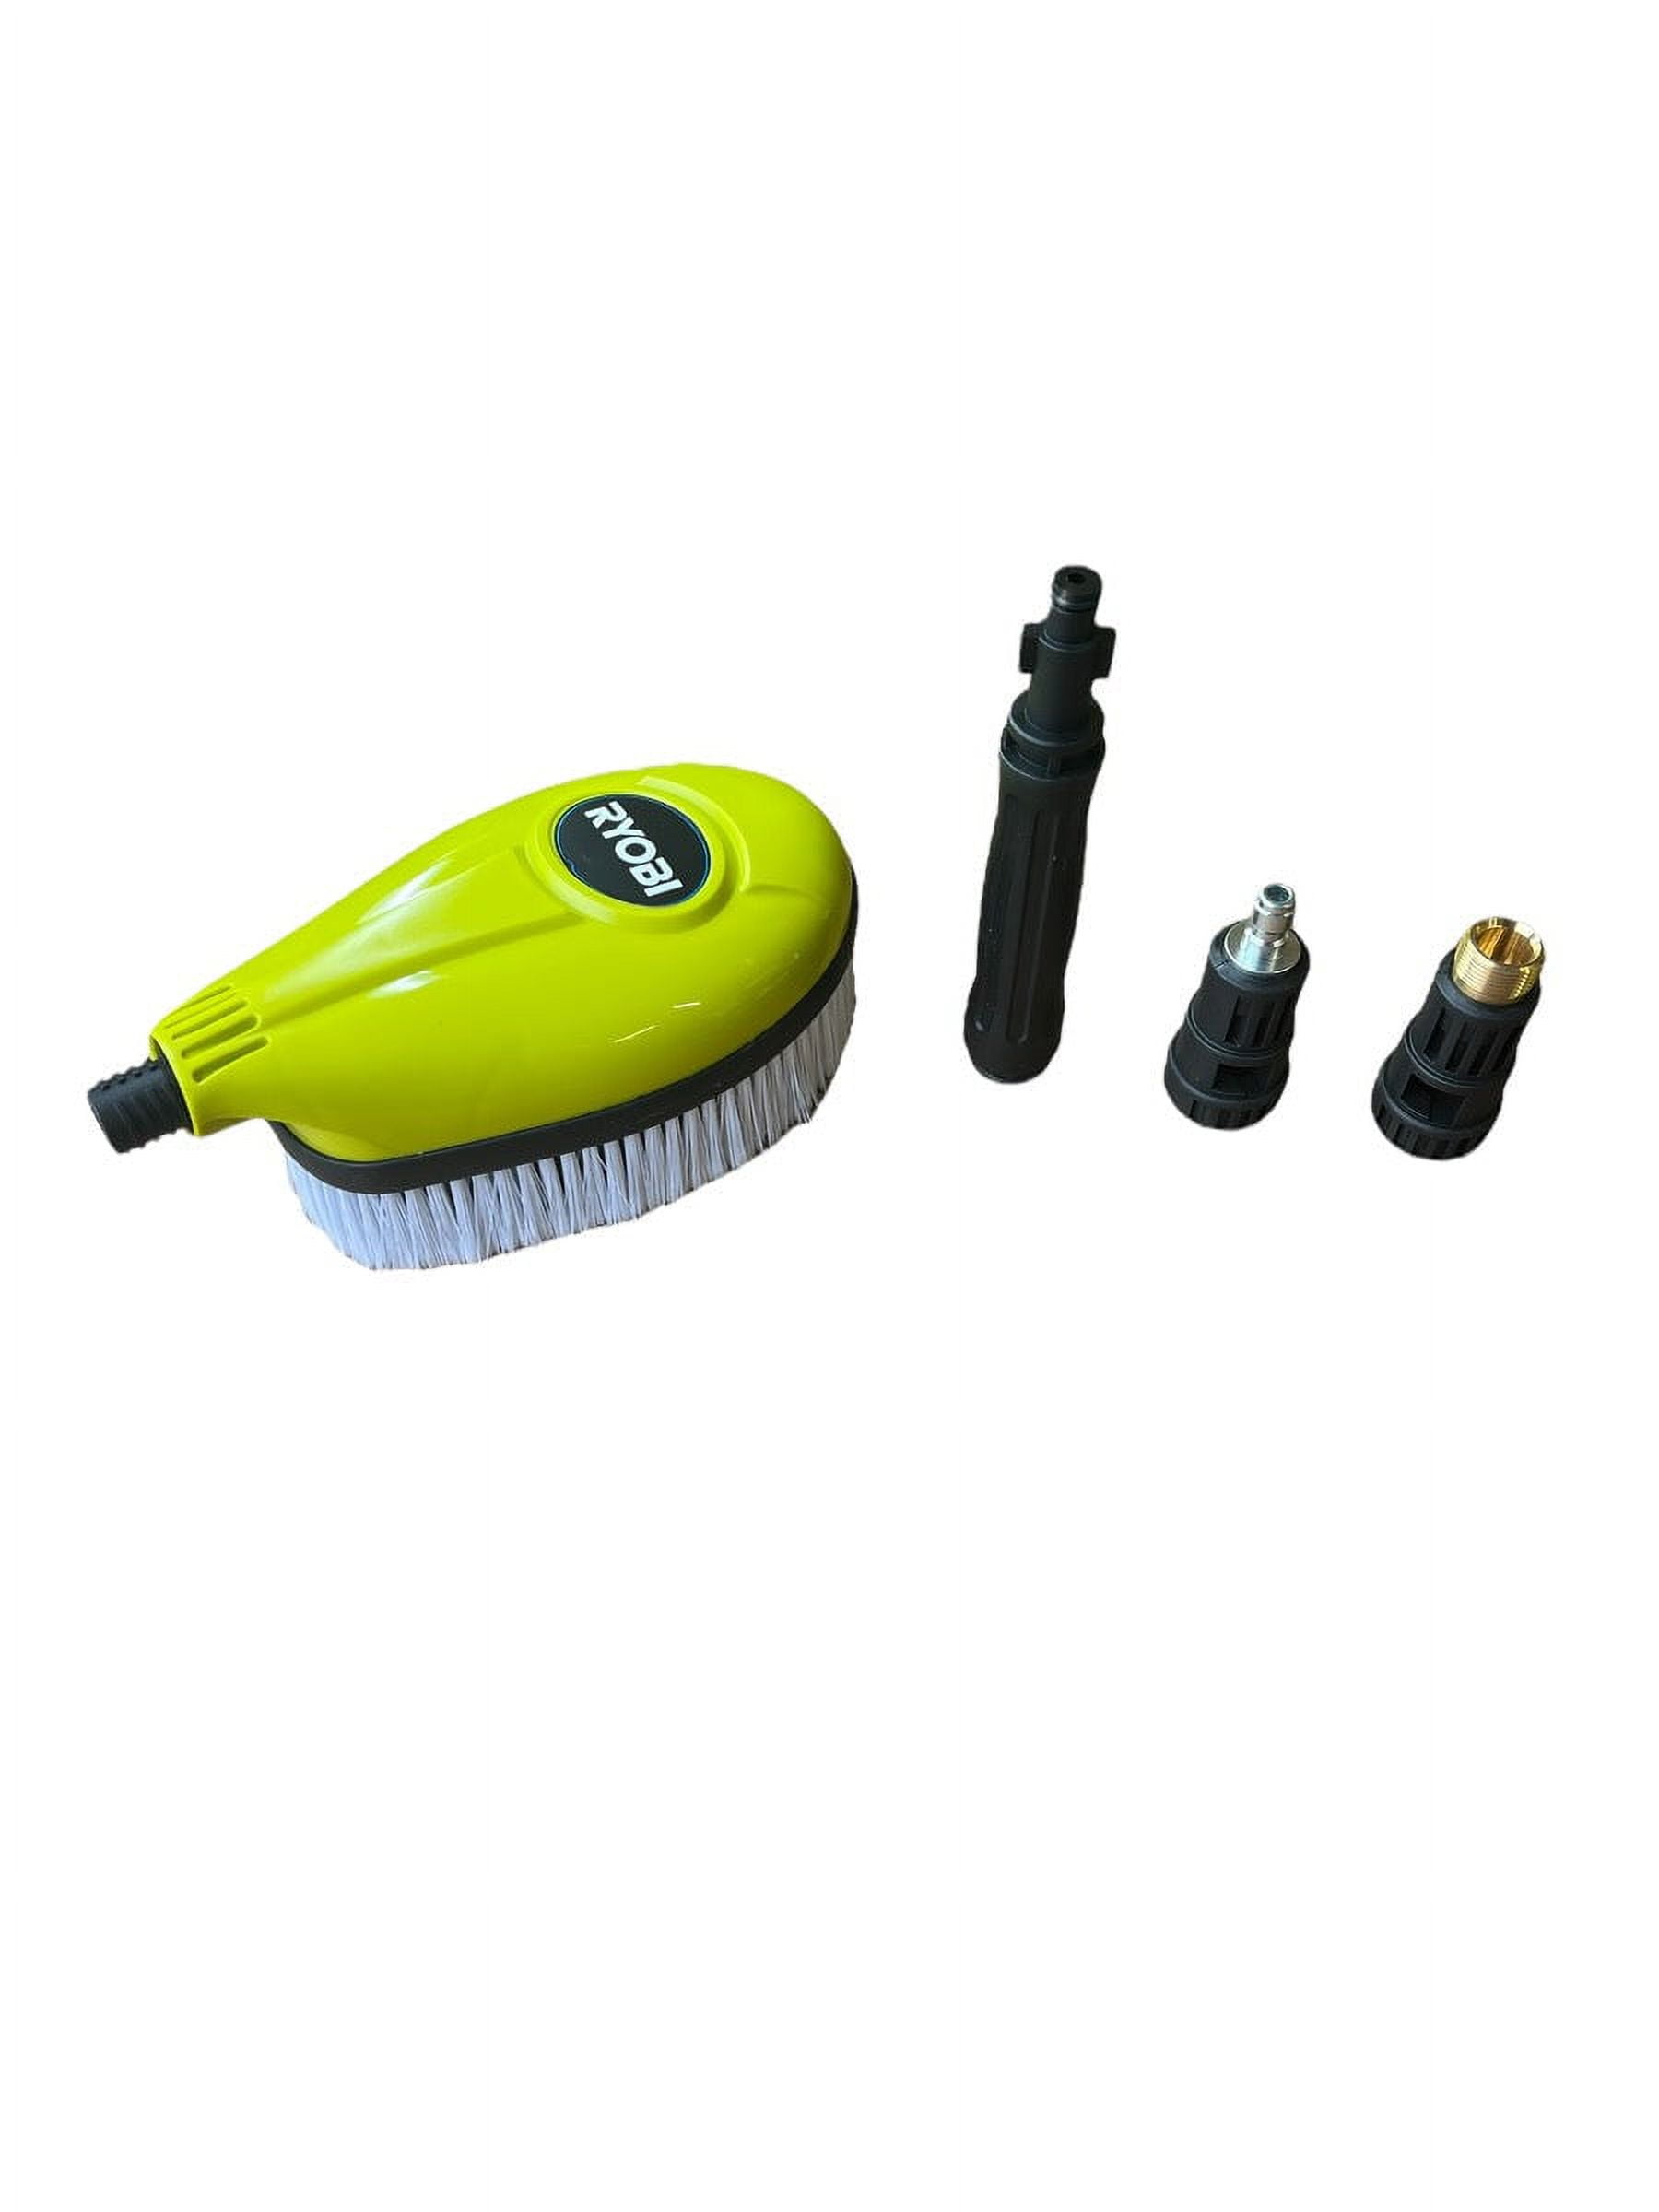 Reviews for RYOBI Rotating Wash Brush/Brush Kit